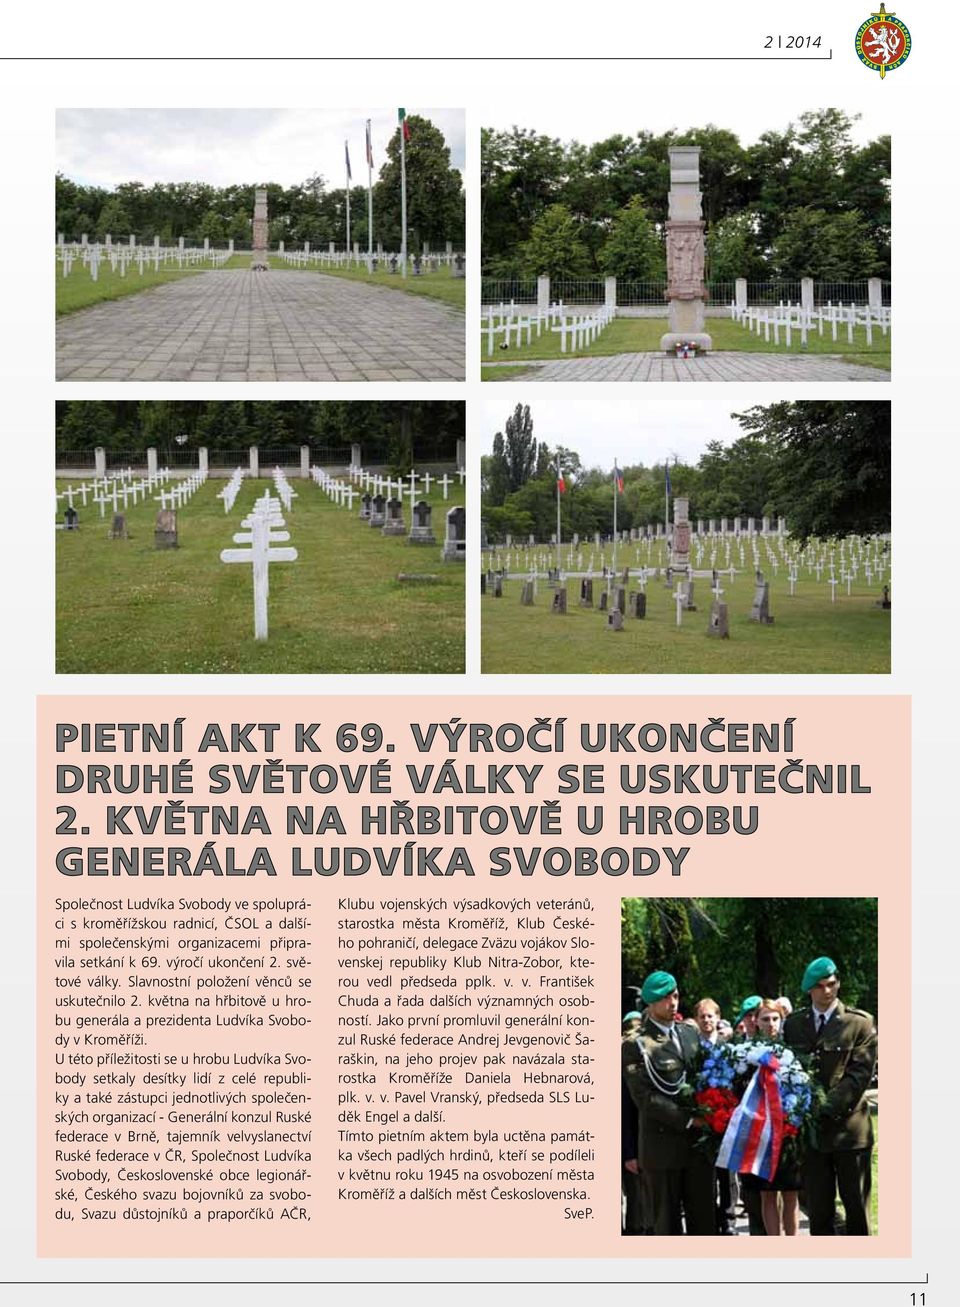 výročí ukončení 2. světové války. Slavnostní položení věnců se uskutečnilo 2. května na hřbitově u hrobu generála a prezidenta Ludvíka Svobody v Kroměříži.